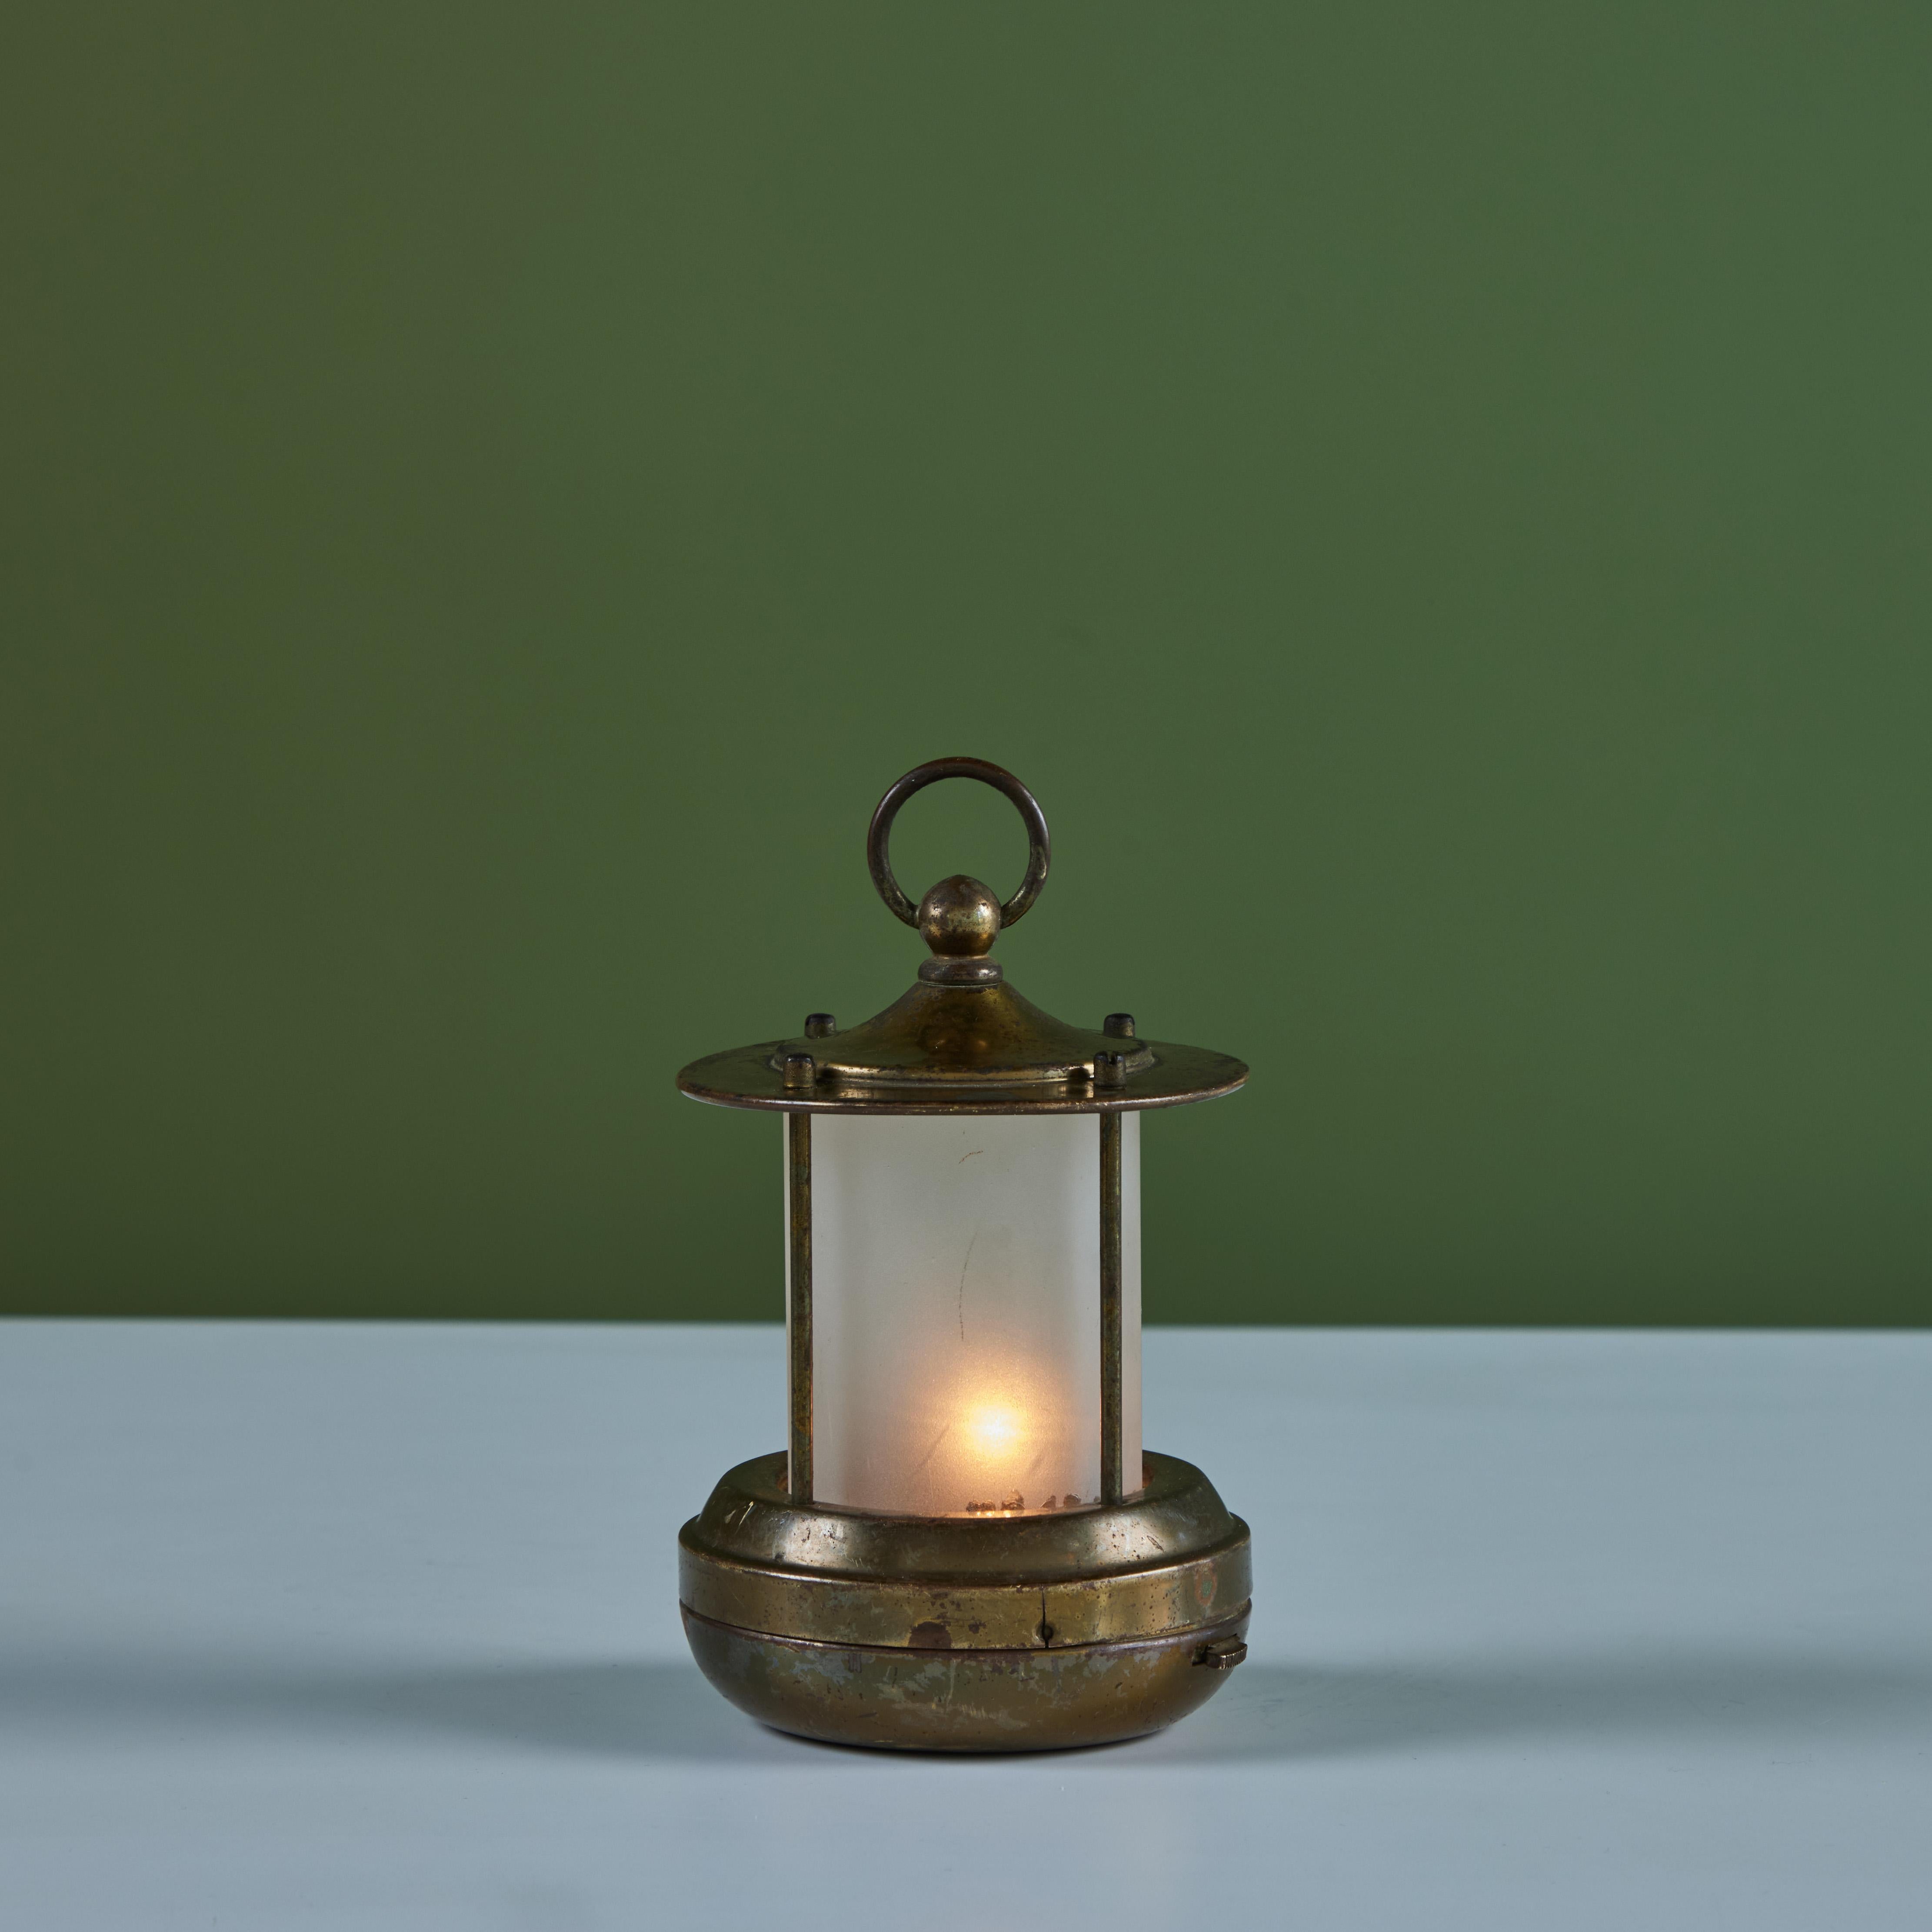 Kleine Messing-Tischlampe im Laternenstil für Chase, ca. 1930er Jahre, USA. Die Art-Deco-Lampe besteht aus einem zylindrischen, kegelförmigen Glas mit einem Sockel aus Messing und einer Kappe mit Griff. Diese Lampe ist batteriebetrieben mit zwei